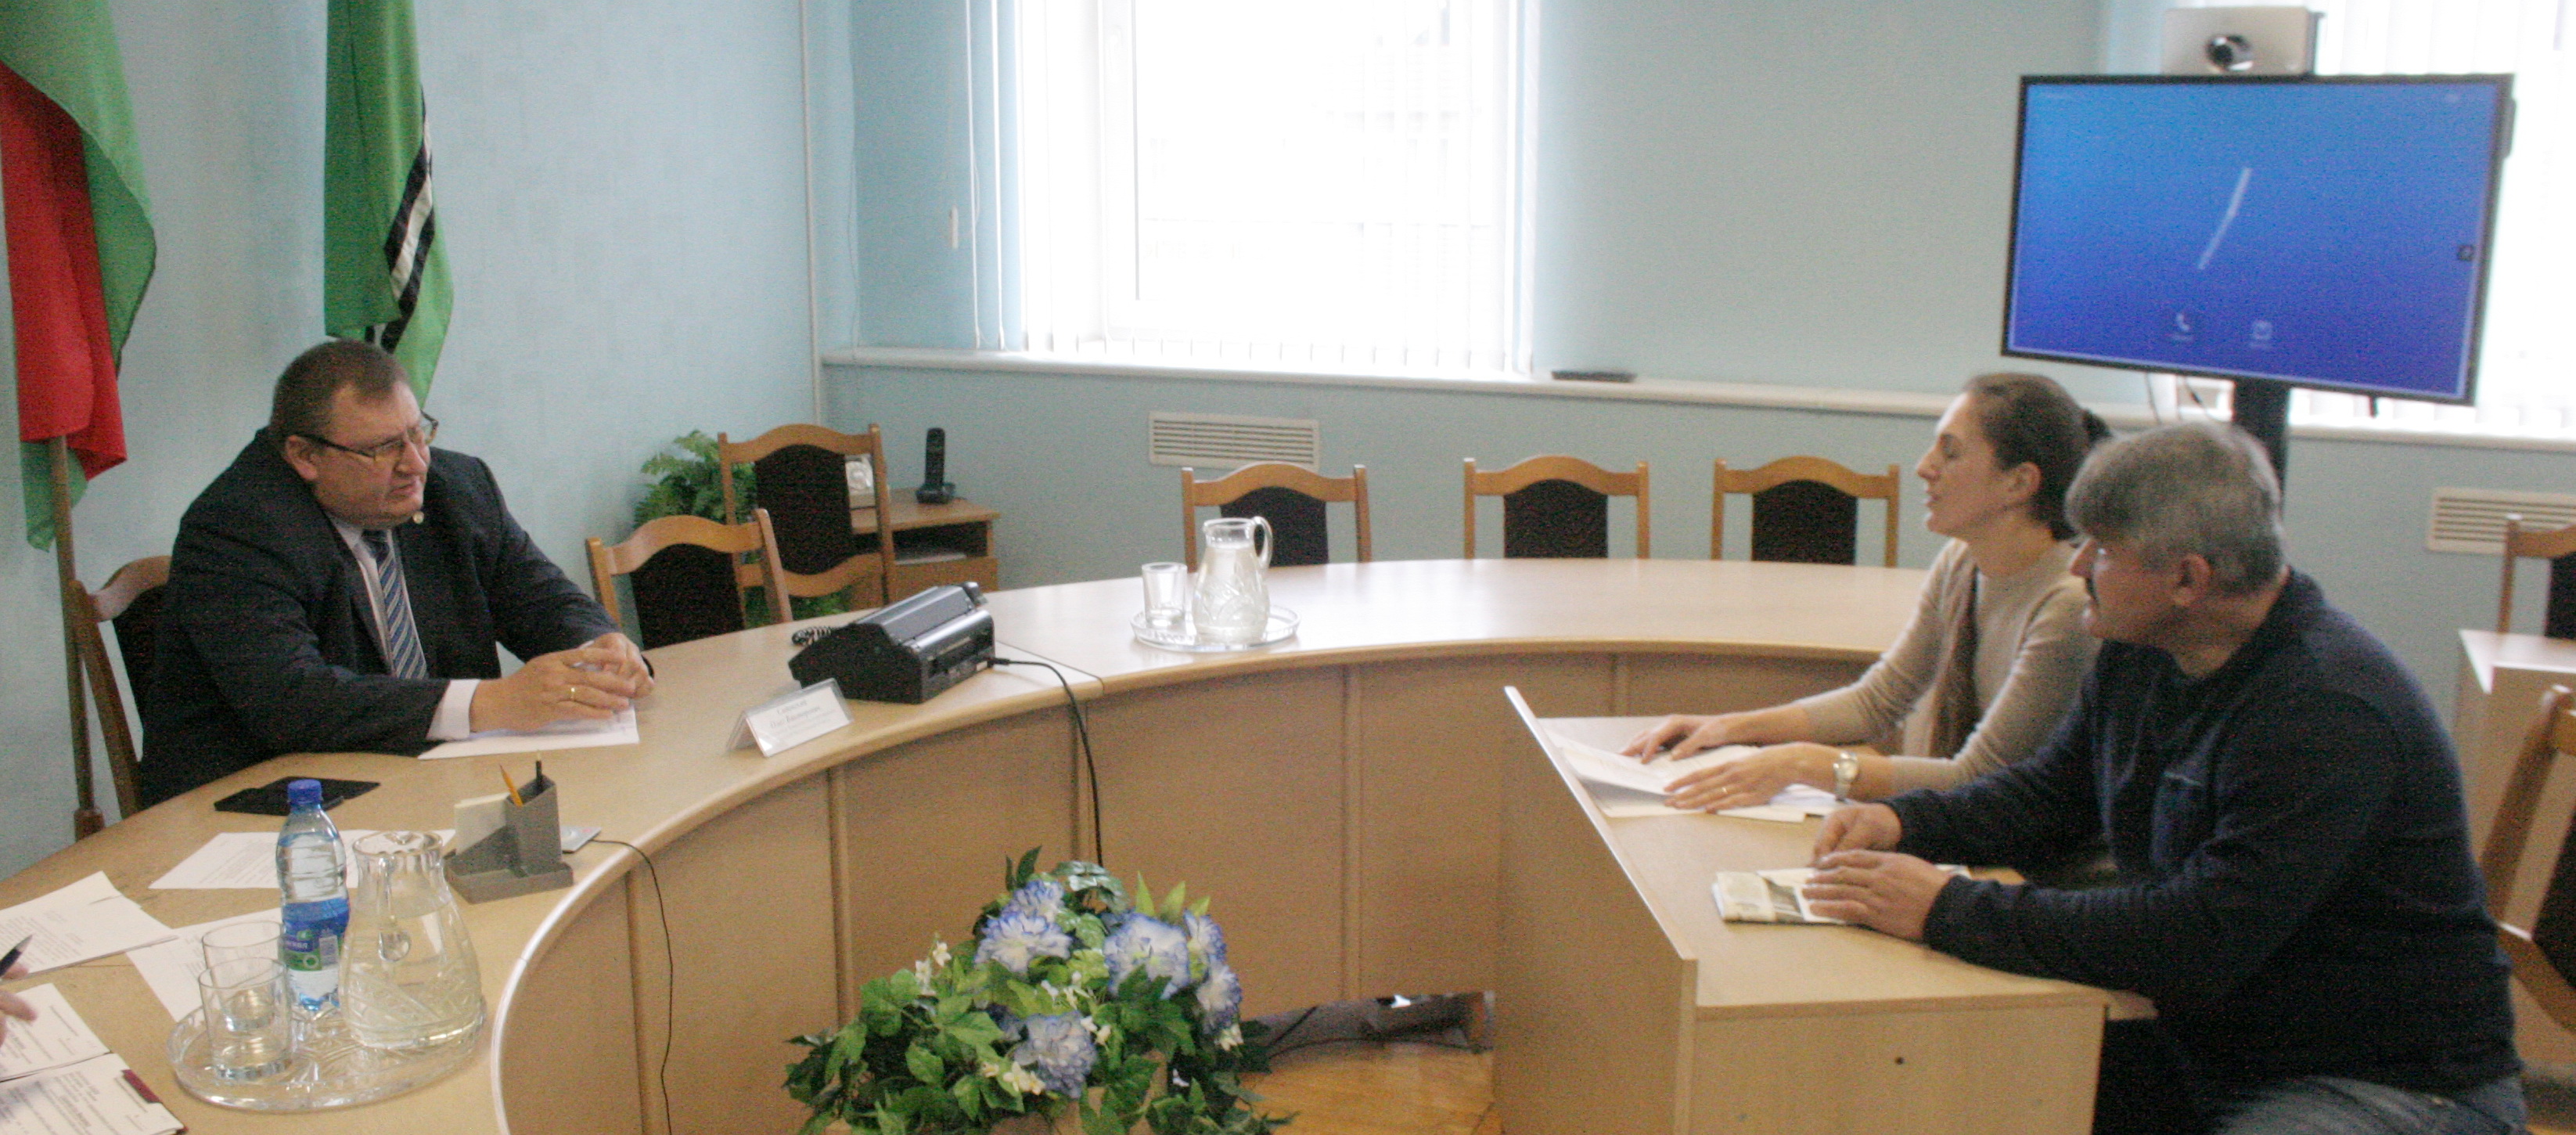 Председатель Комитета госконтроля Могилевской области Олег Садовский встретился с гражданами и провел прямую телефонную линию в Осиповичах